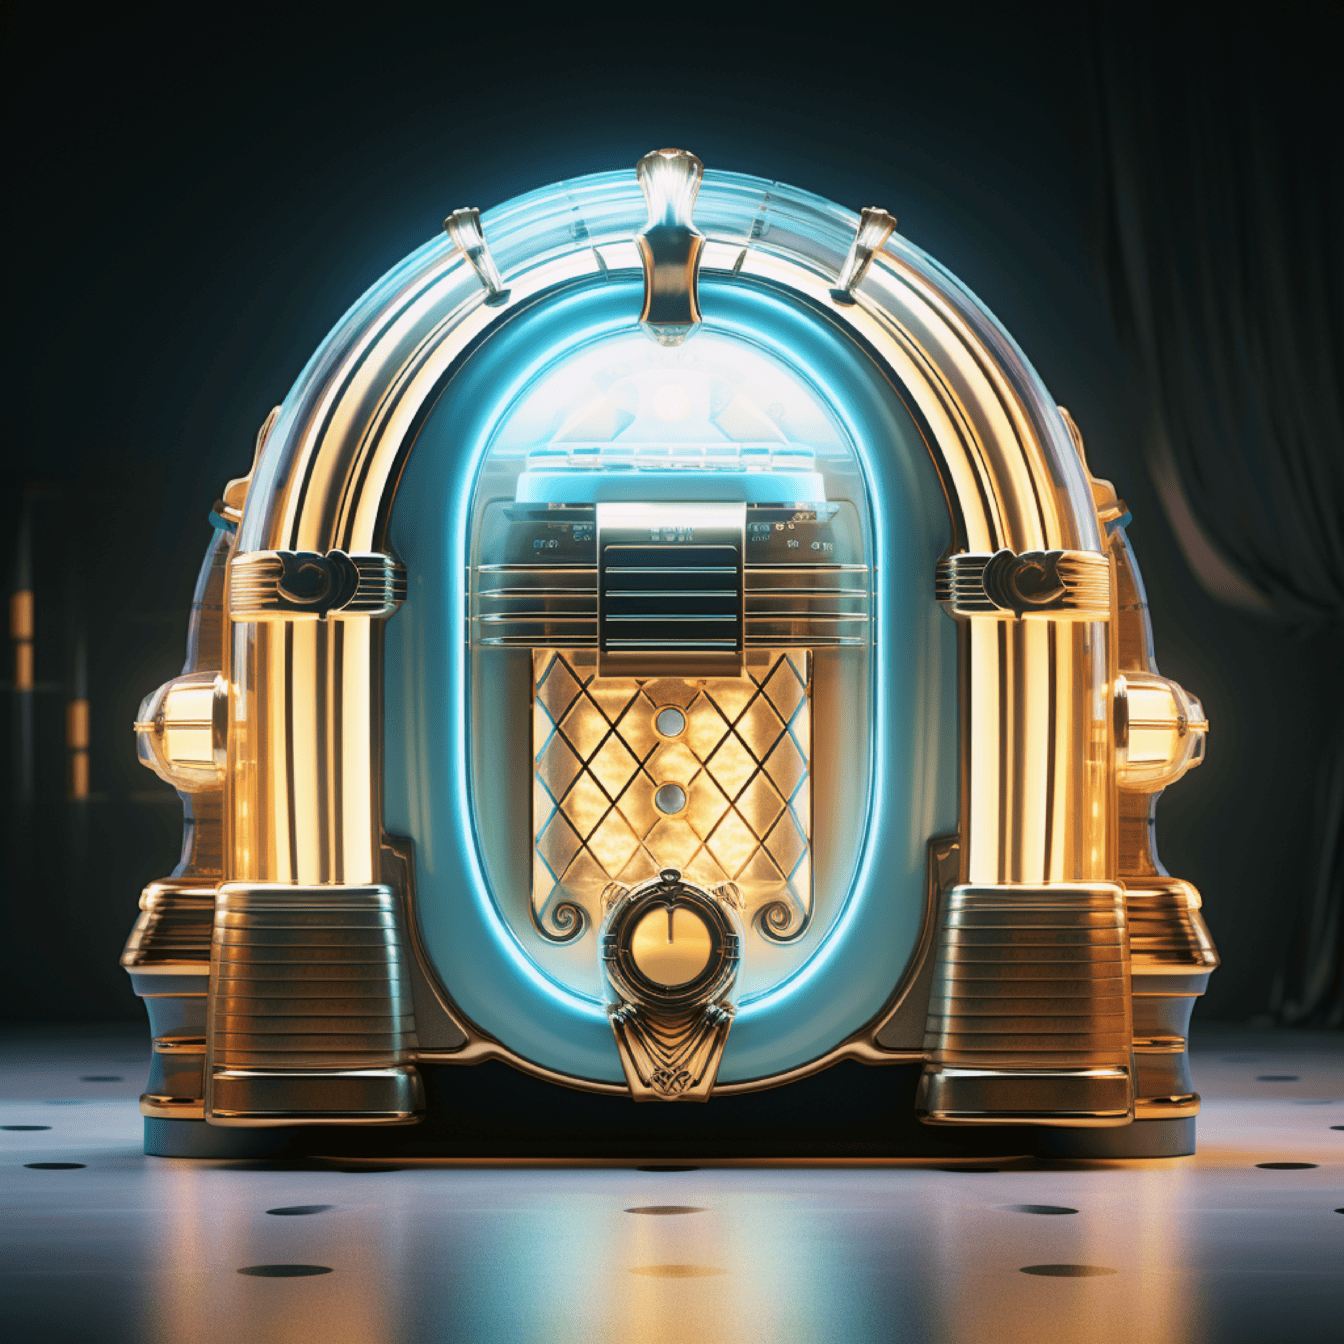 Jukebox musik kilau emas dalam ilustrasi diskotek